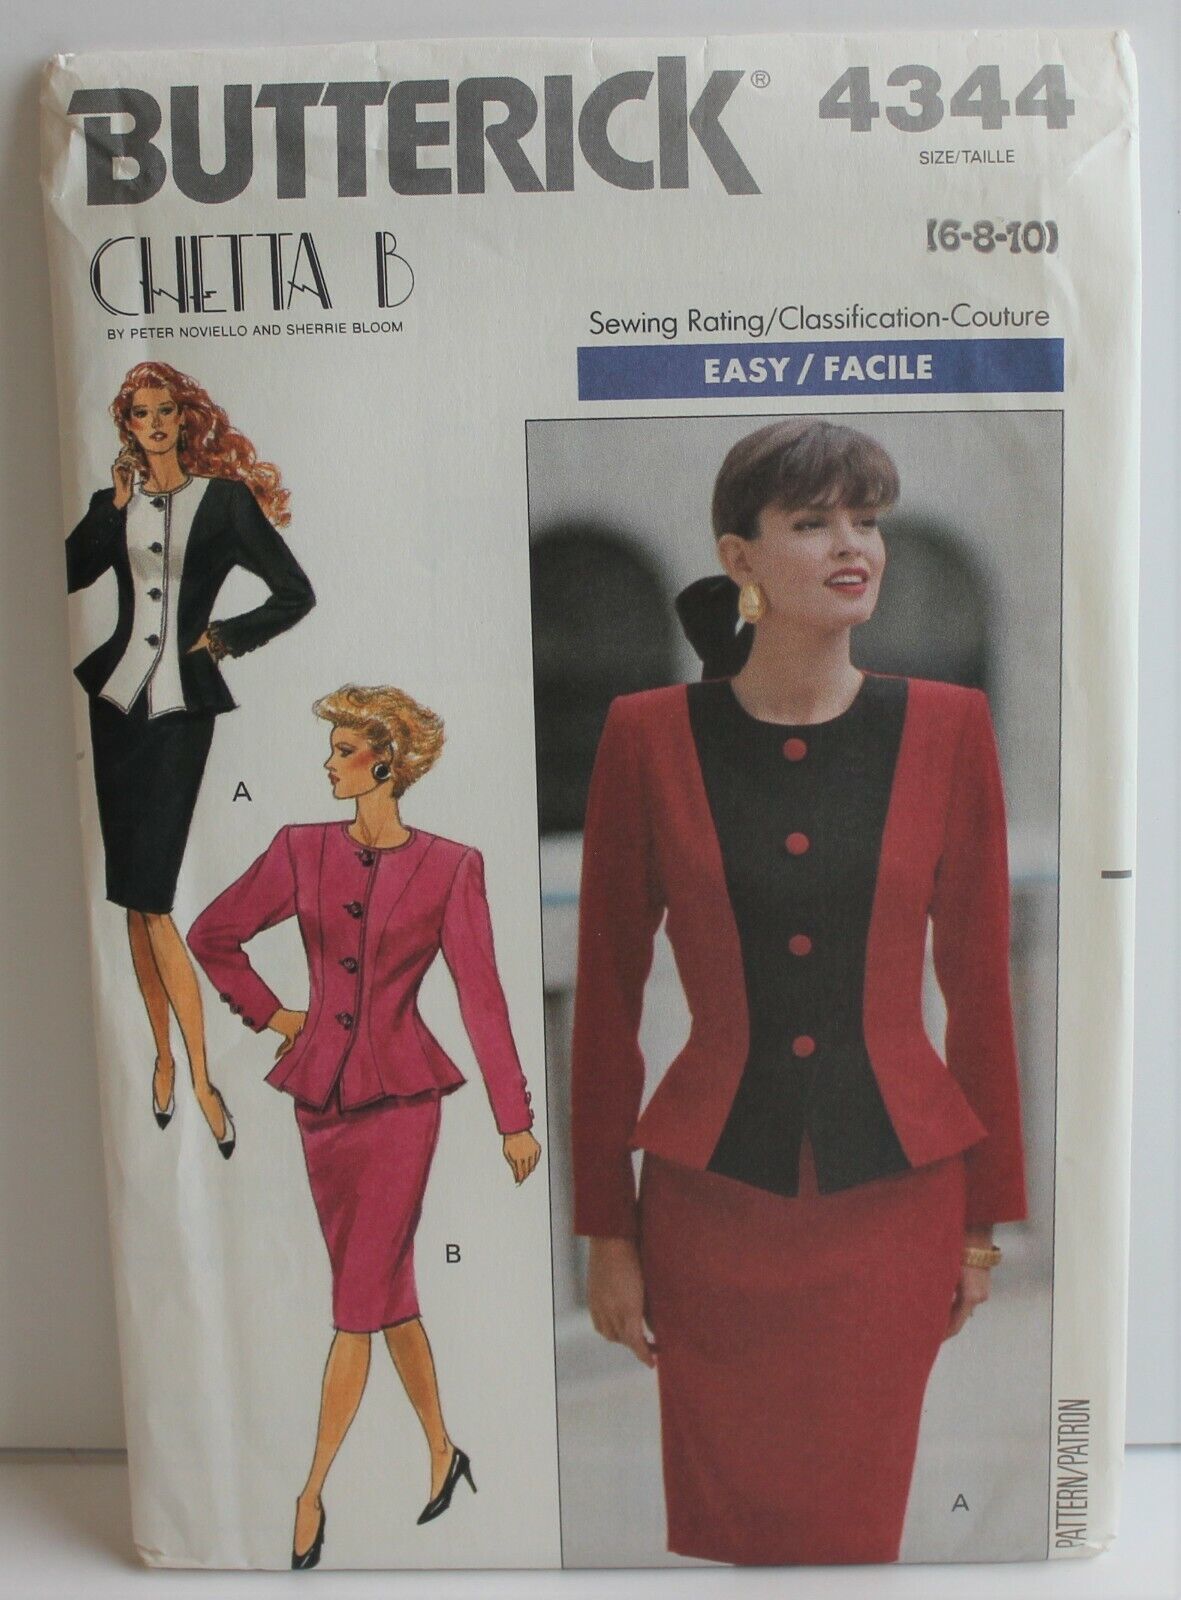 Butterick 4344 Sewing Pattern Top Skirt Size 6 8 10 Chetta B - $9.74